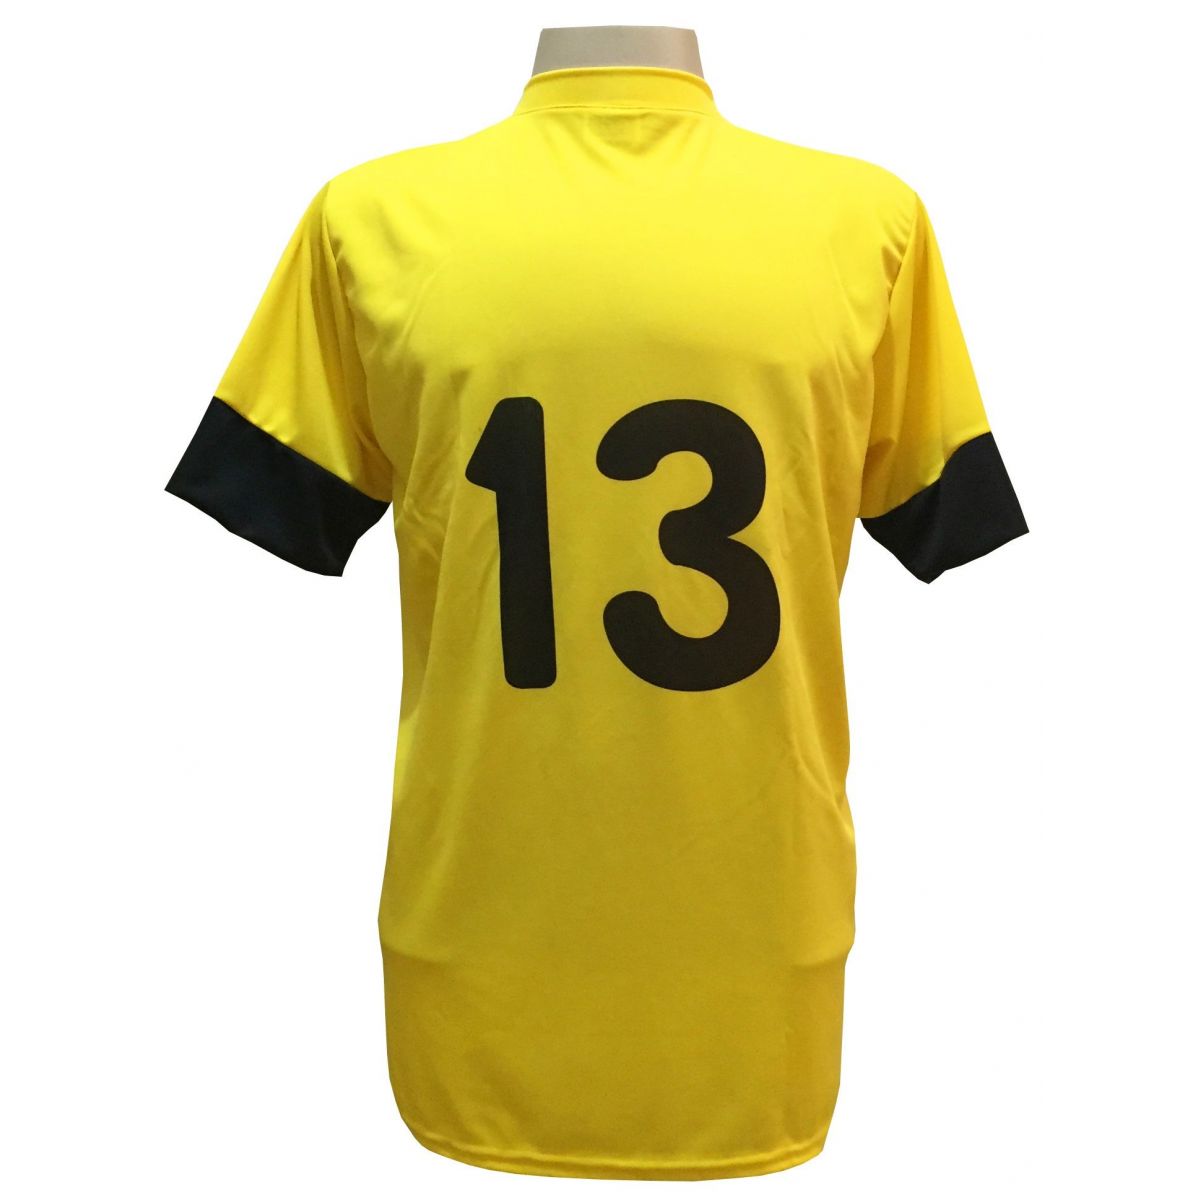 Jogo de Camisa com 18 unidades modelo Columbus Amarelo/Preto + 1 Goleiro + Brindes